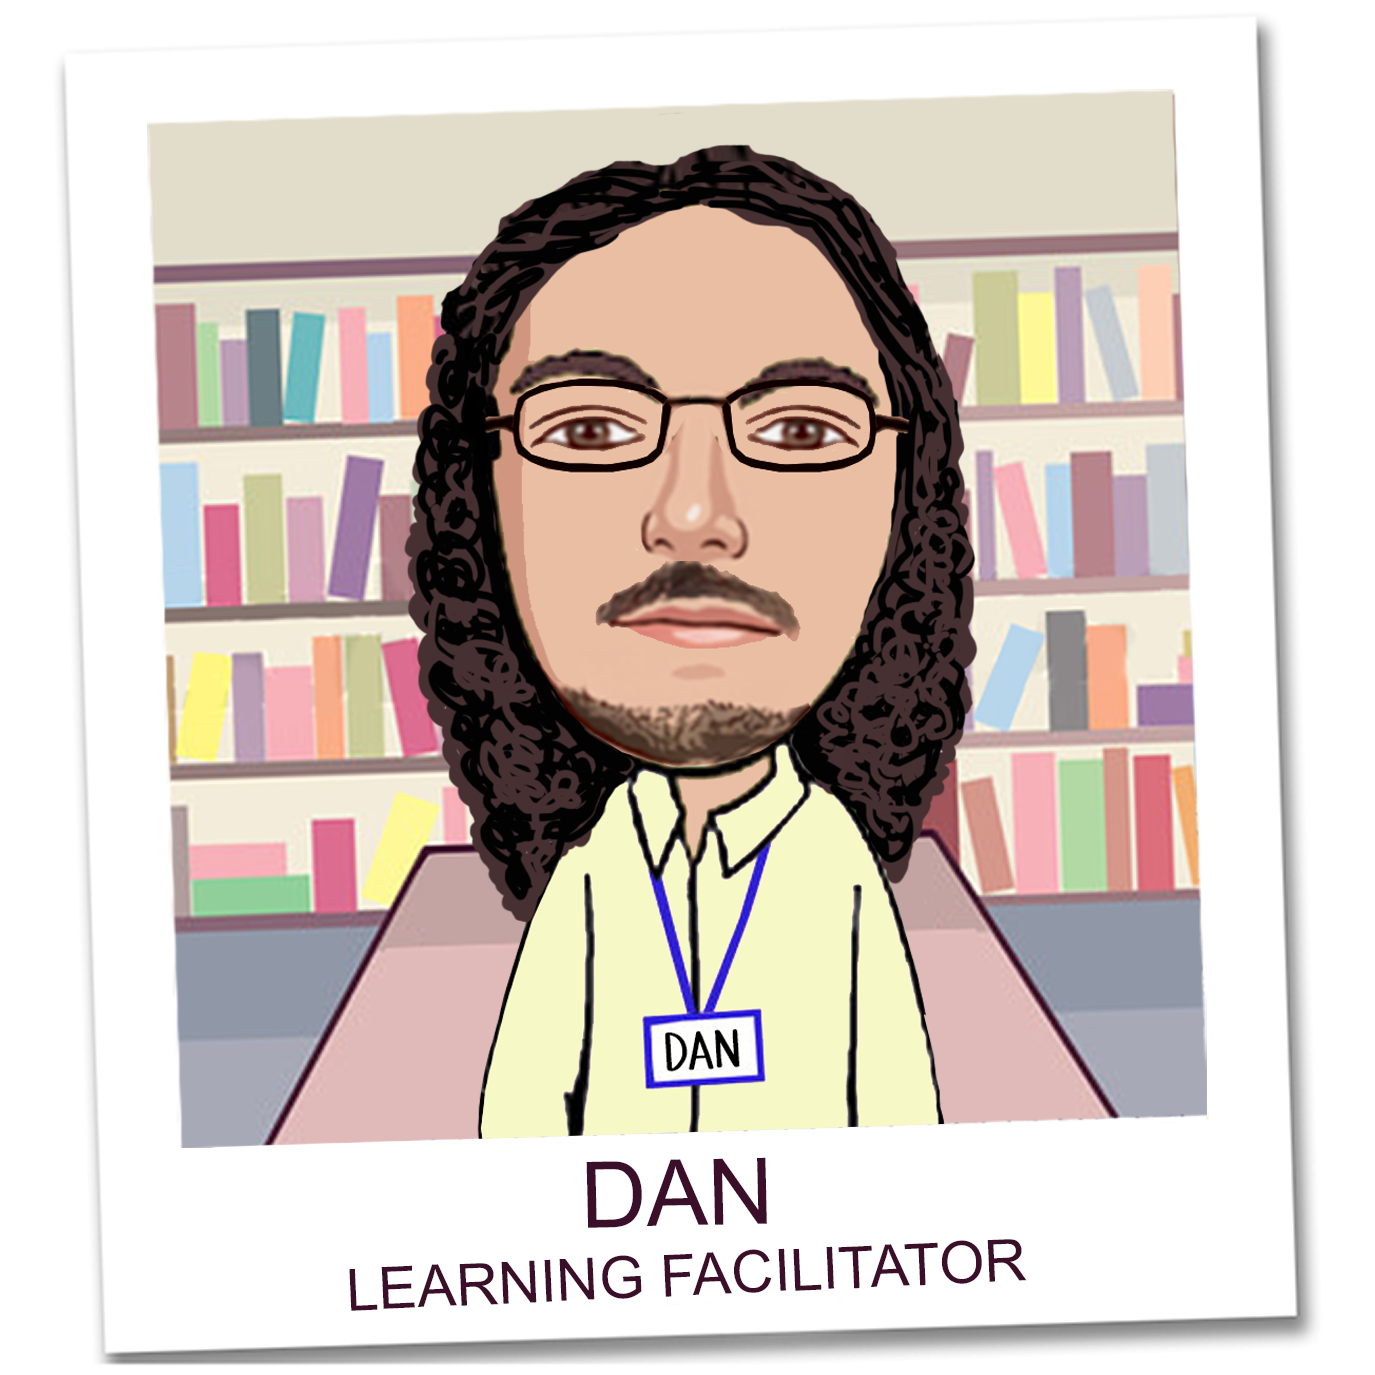 Dan, Learning Facilitator